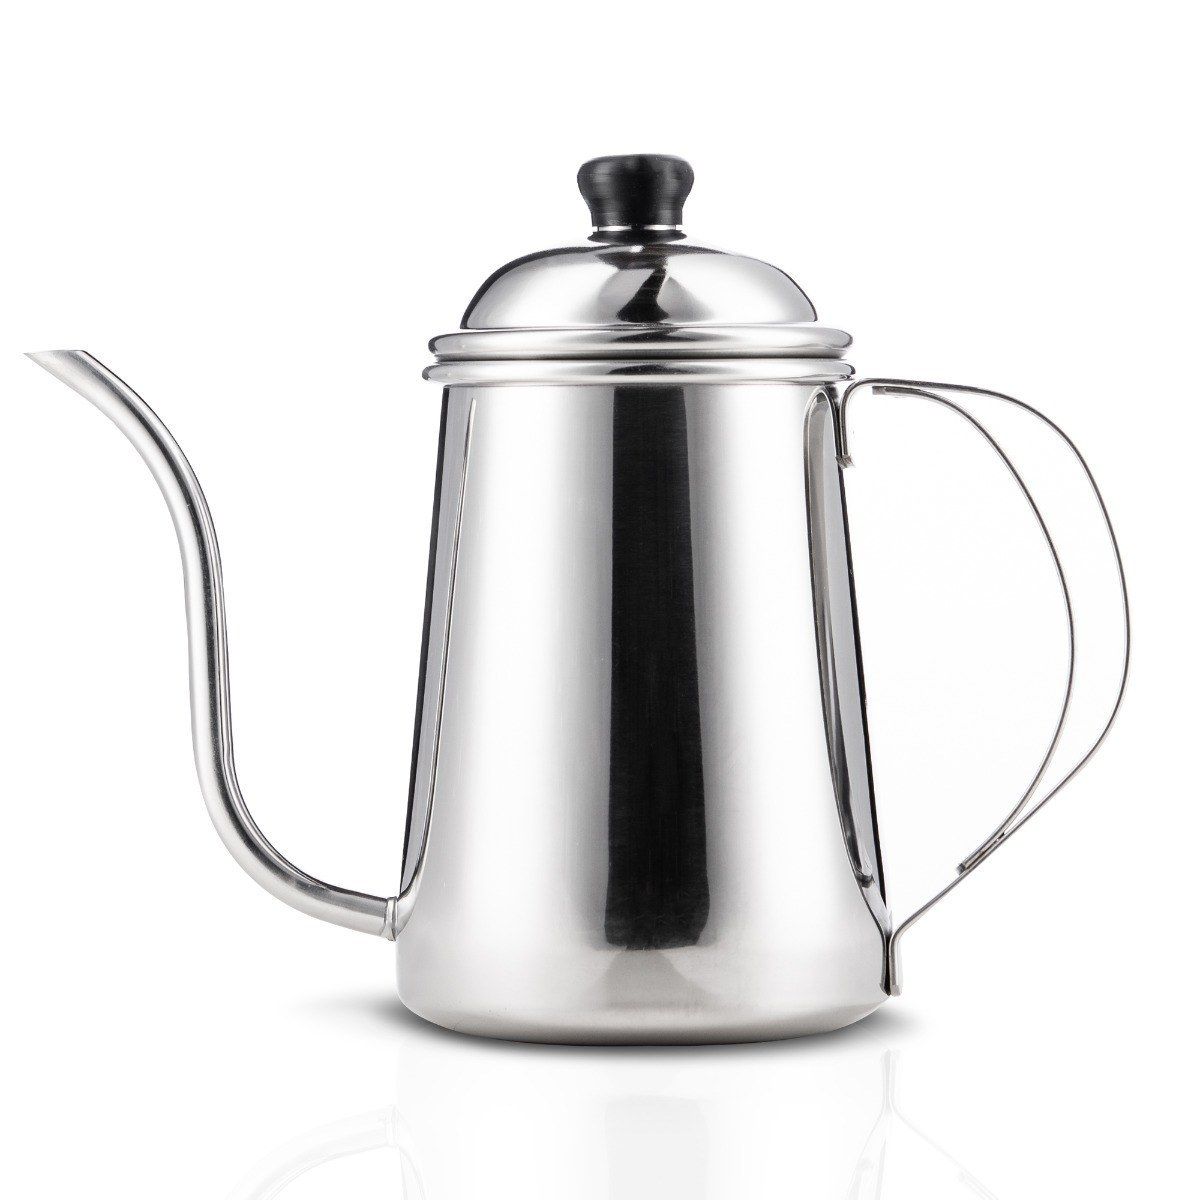 Choice 10 oz. Stainless Steel Gooseneck Teapot